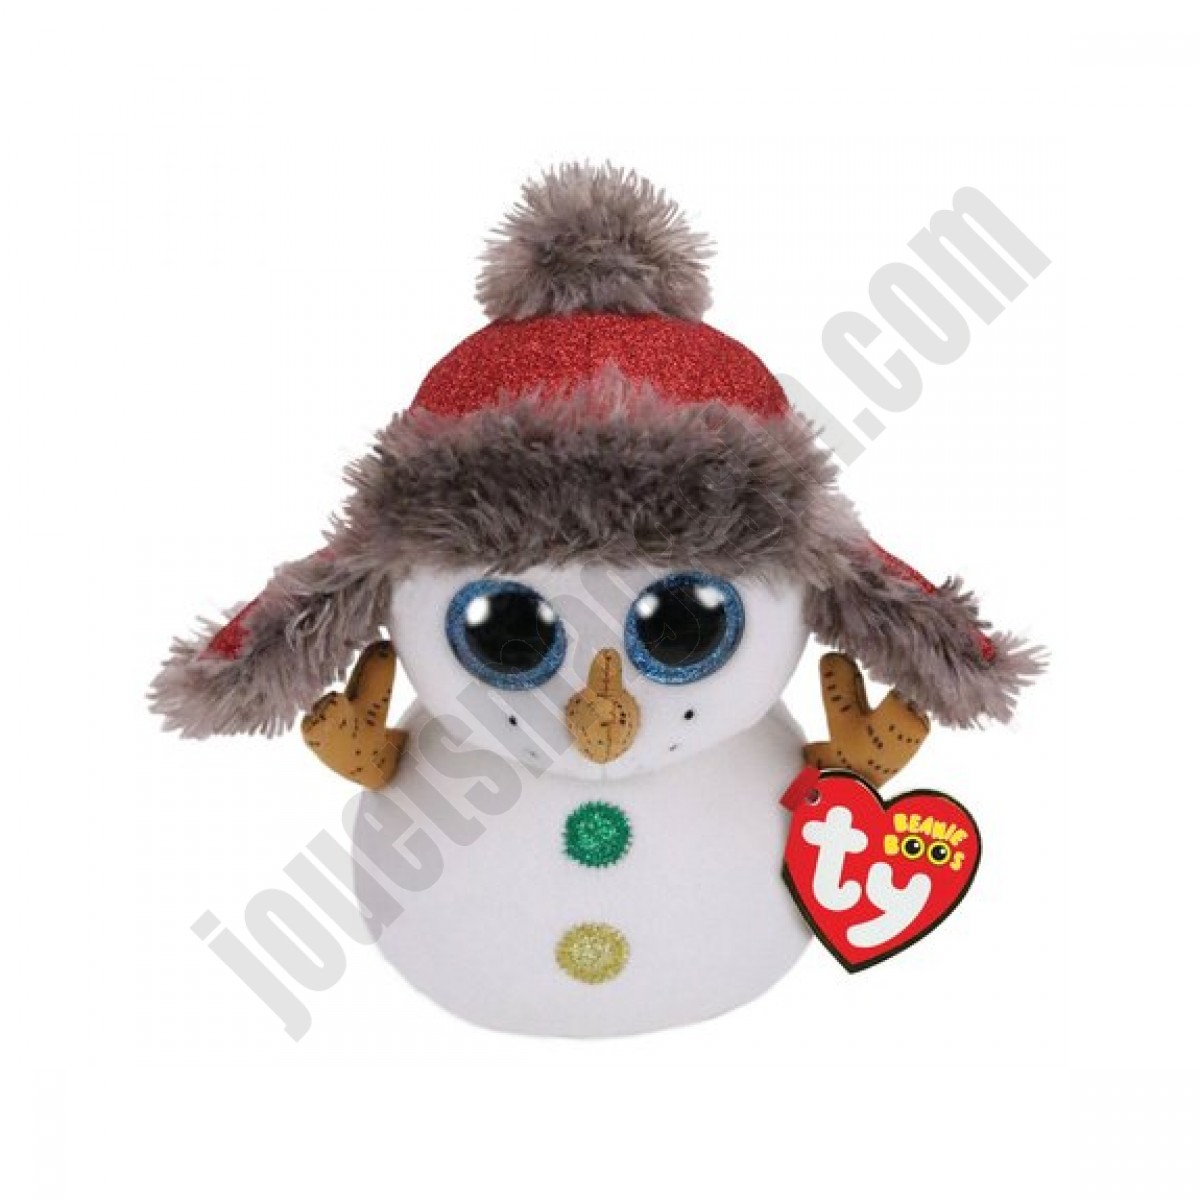 Beanie Boo's - Buttons le bonhomme de neige 23 cm En promotion - Beanie Boo's - Buttons le bonhomme de neige 23 cm En promotion